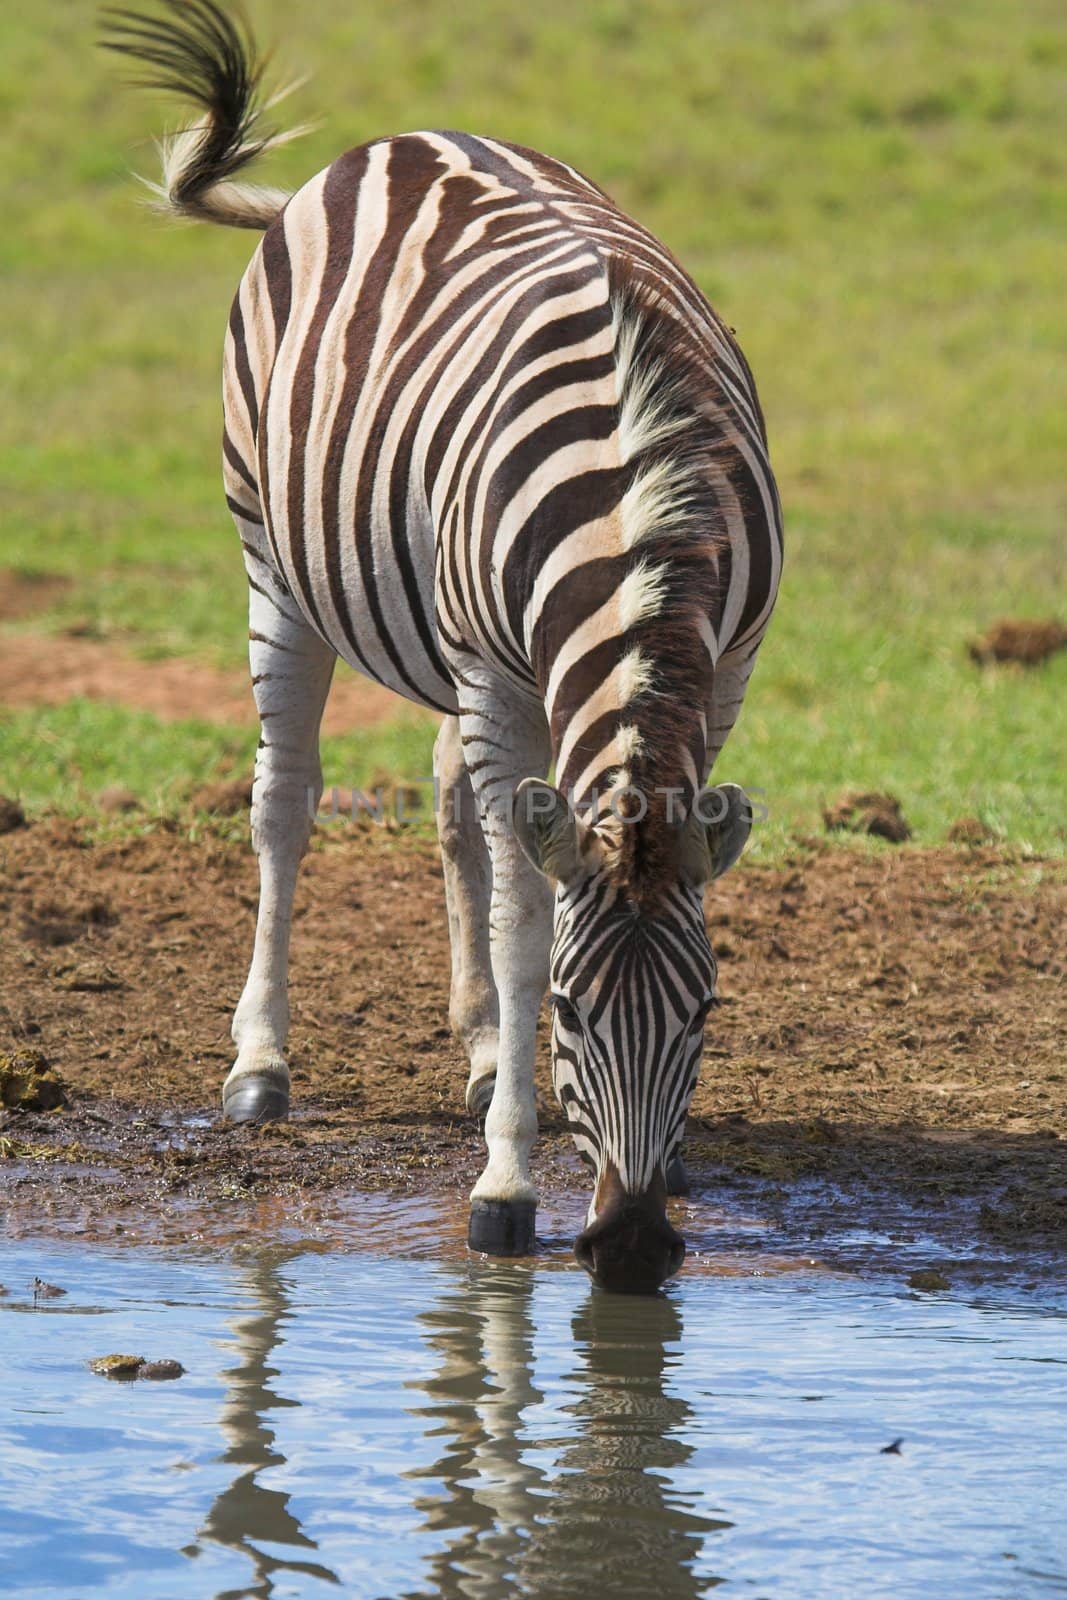 Zebra Drinking by nightowlza